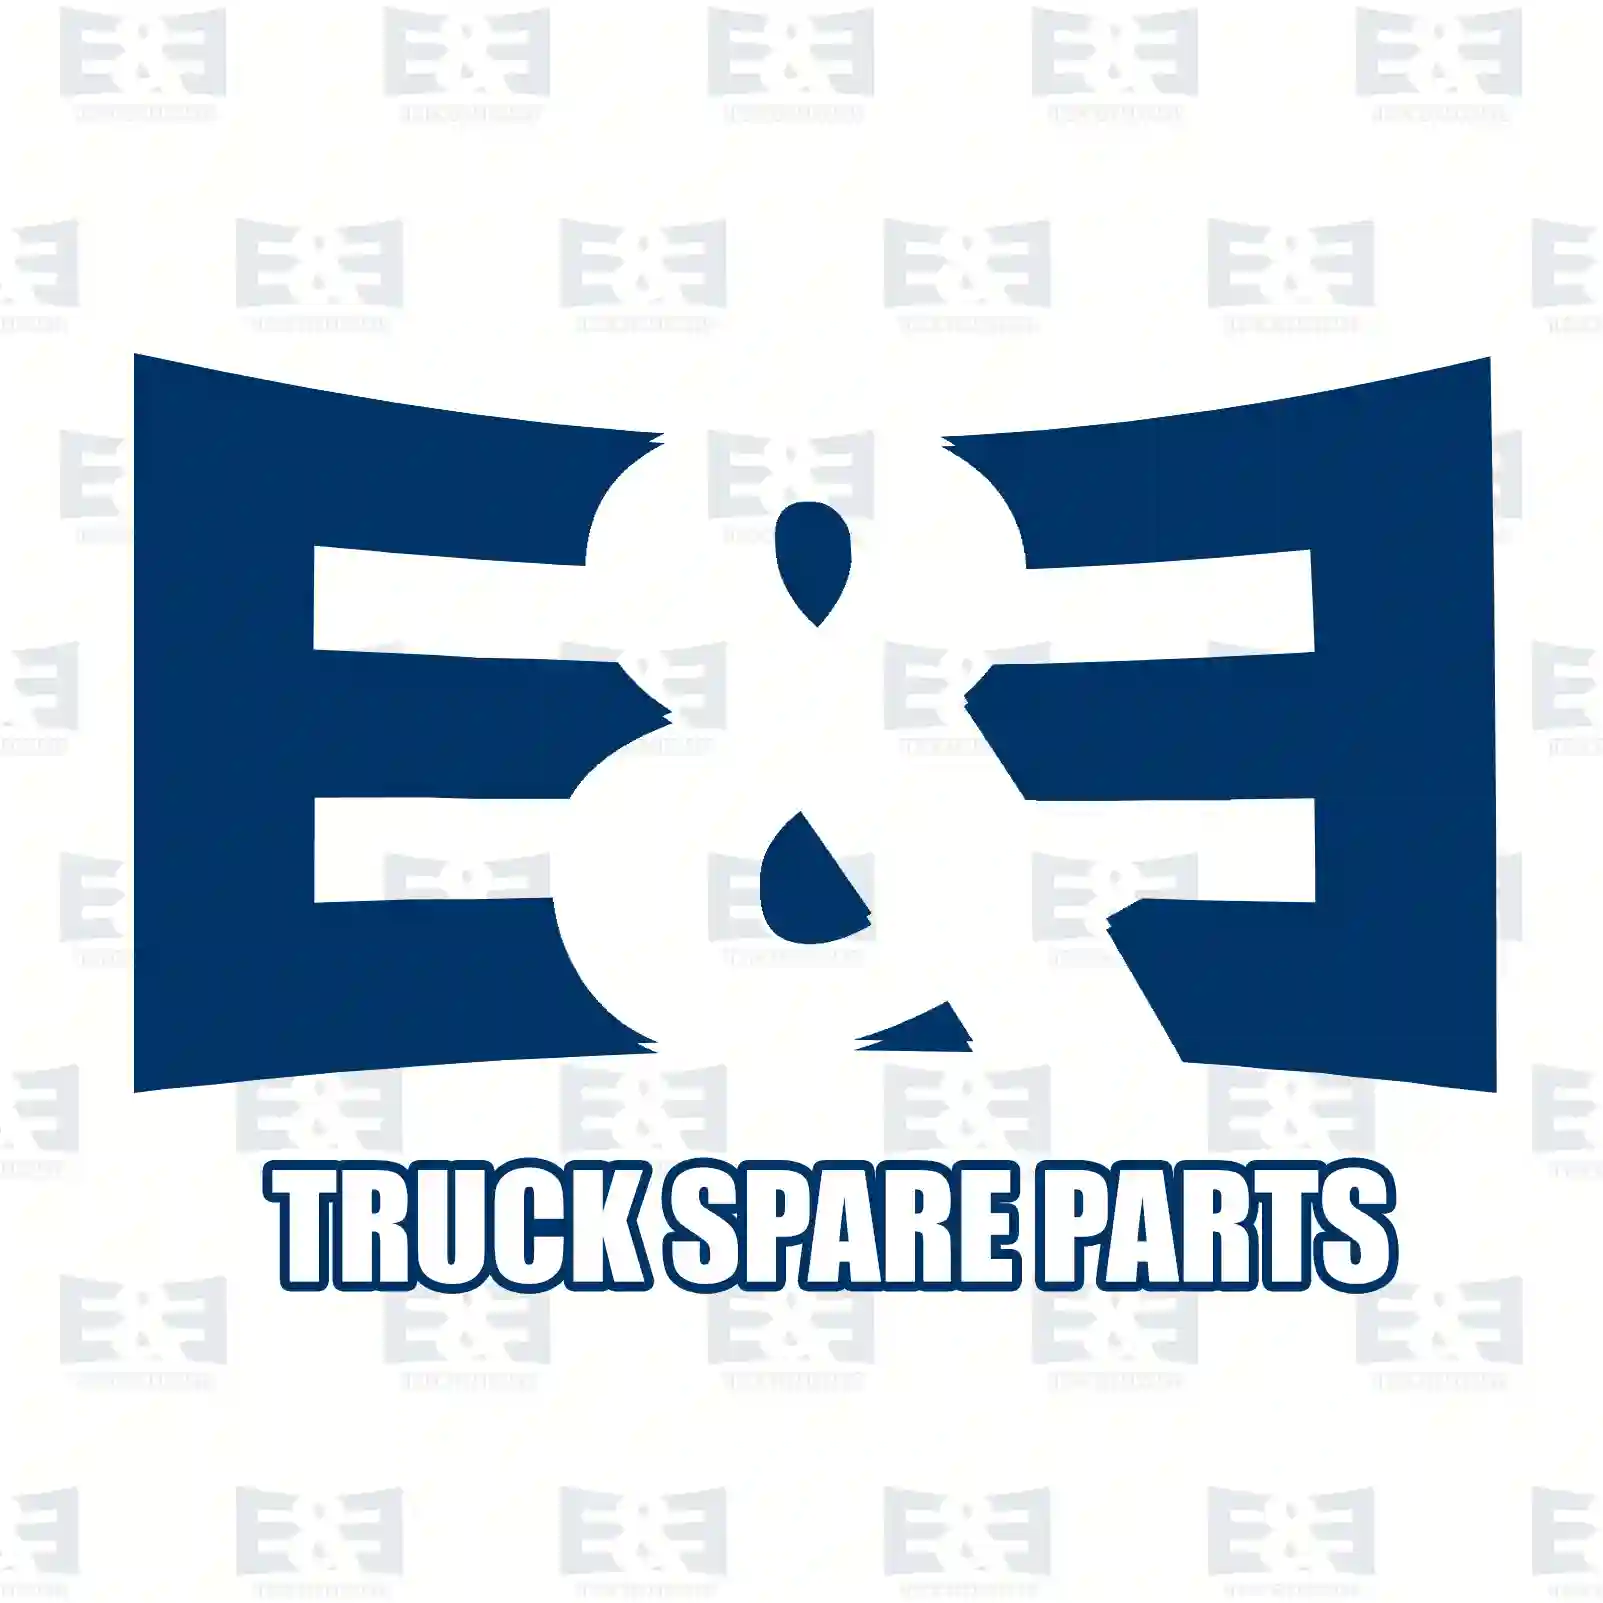 Switching device, 2E2278205, 9432600209, 9432600809, 9432601209 ||  2E2278205 E&E Truck Spare Parts | Truck Spare Parts, Auotomotive Spare Parts Switching device, 2E2278205, 9432600209, 9432600809, 9432601209 ||  2E2278205 E&E Truck Spare Parts | Truck Spare Parts, Auotomotive Spare Parts